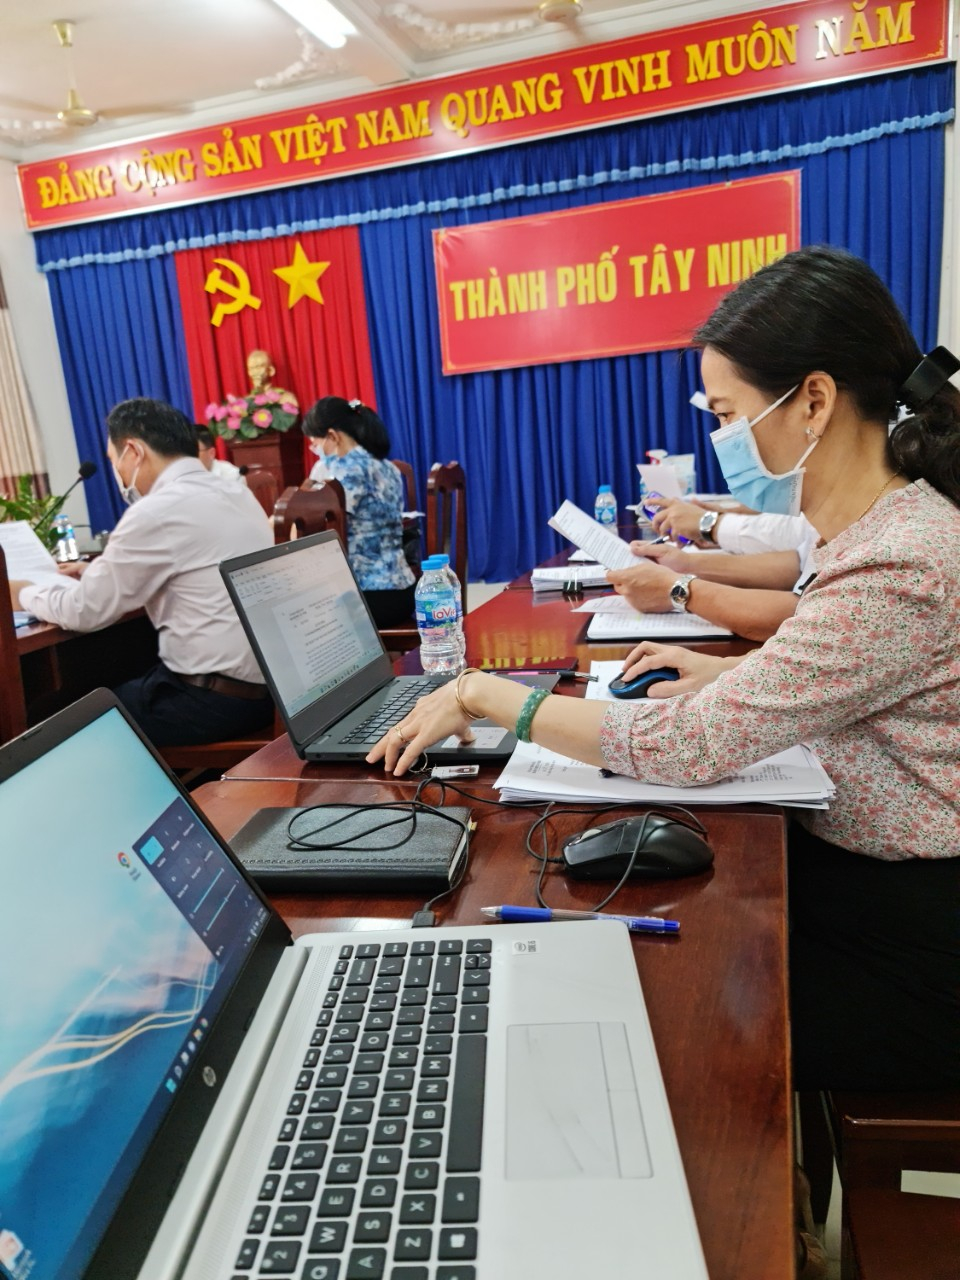 Thành phố Tây Ninh công bố tình hình Kinh tế - Xã hội 6 tháng đầu năm 2022